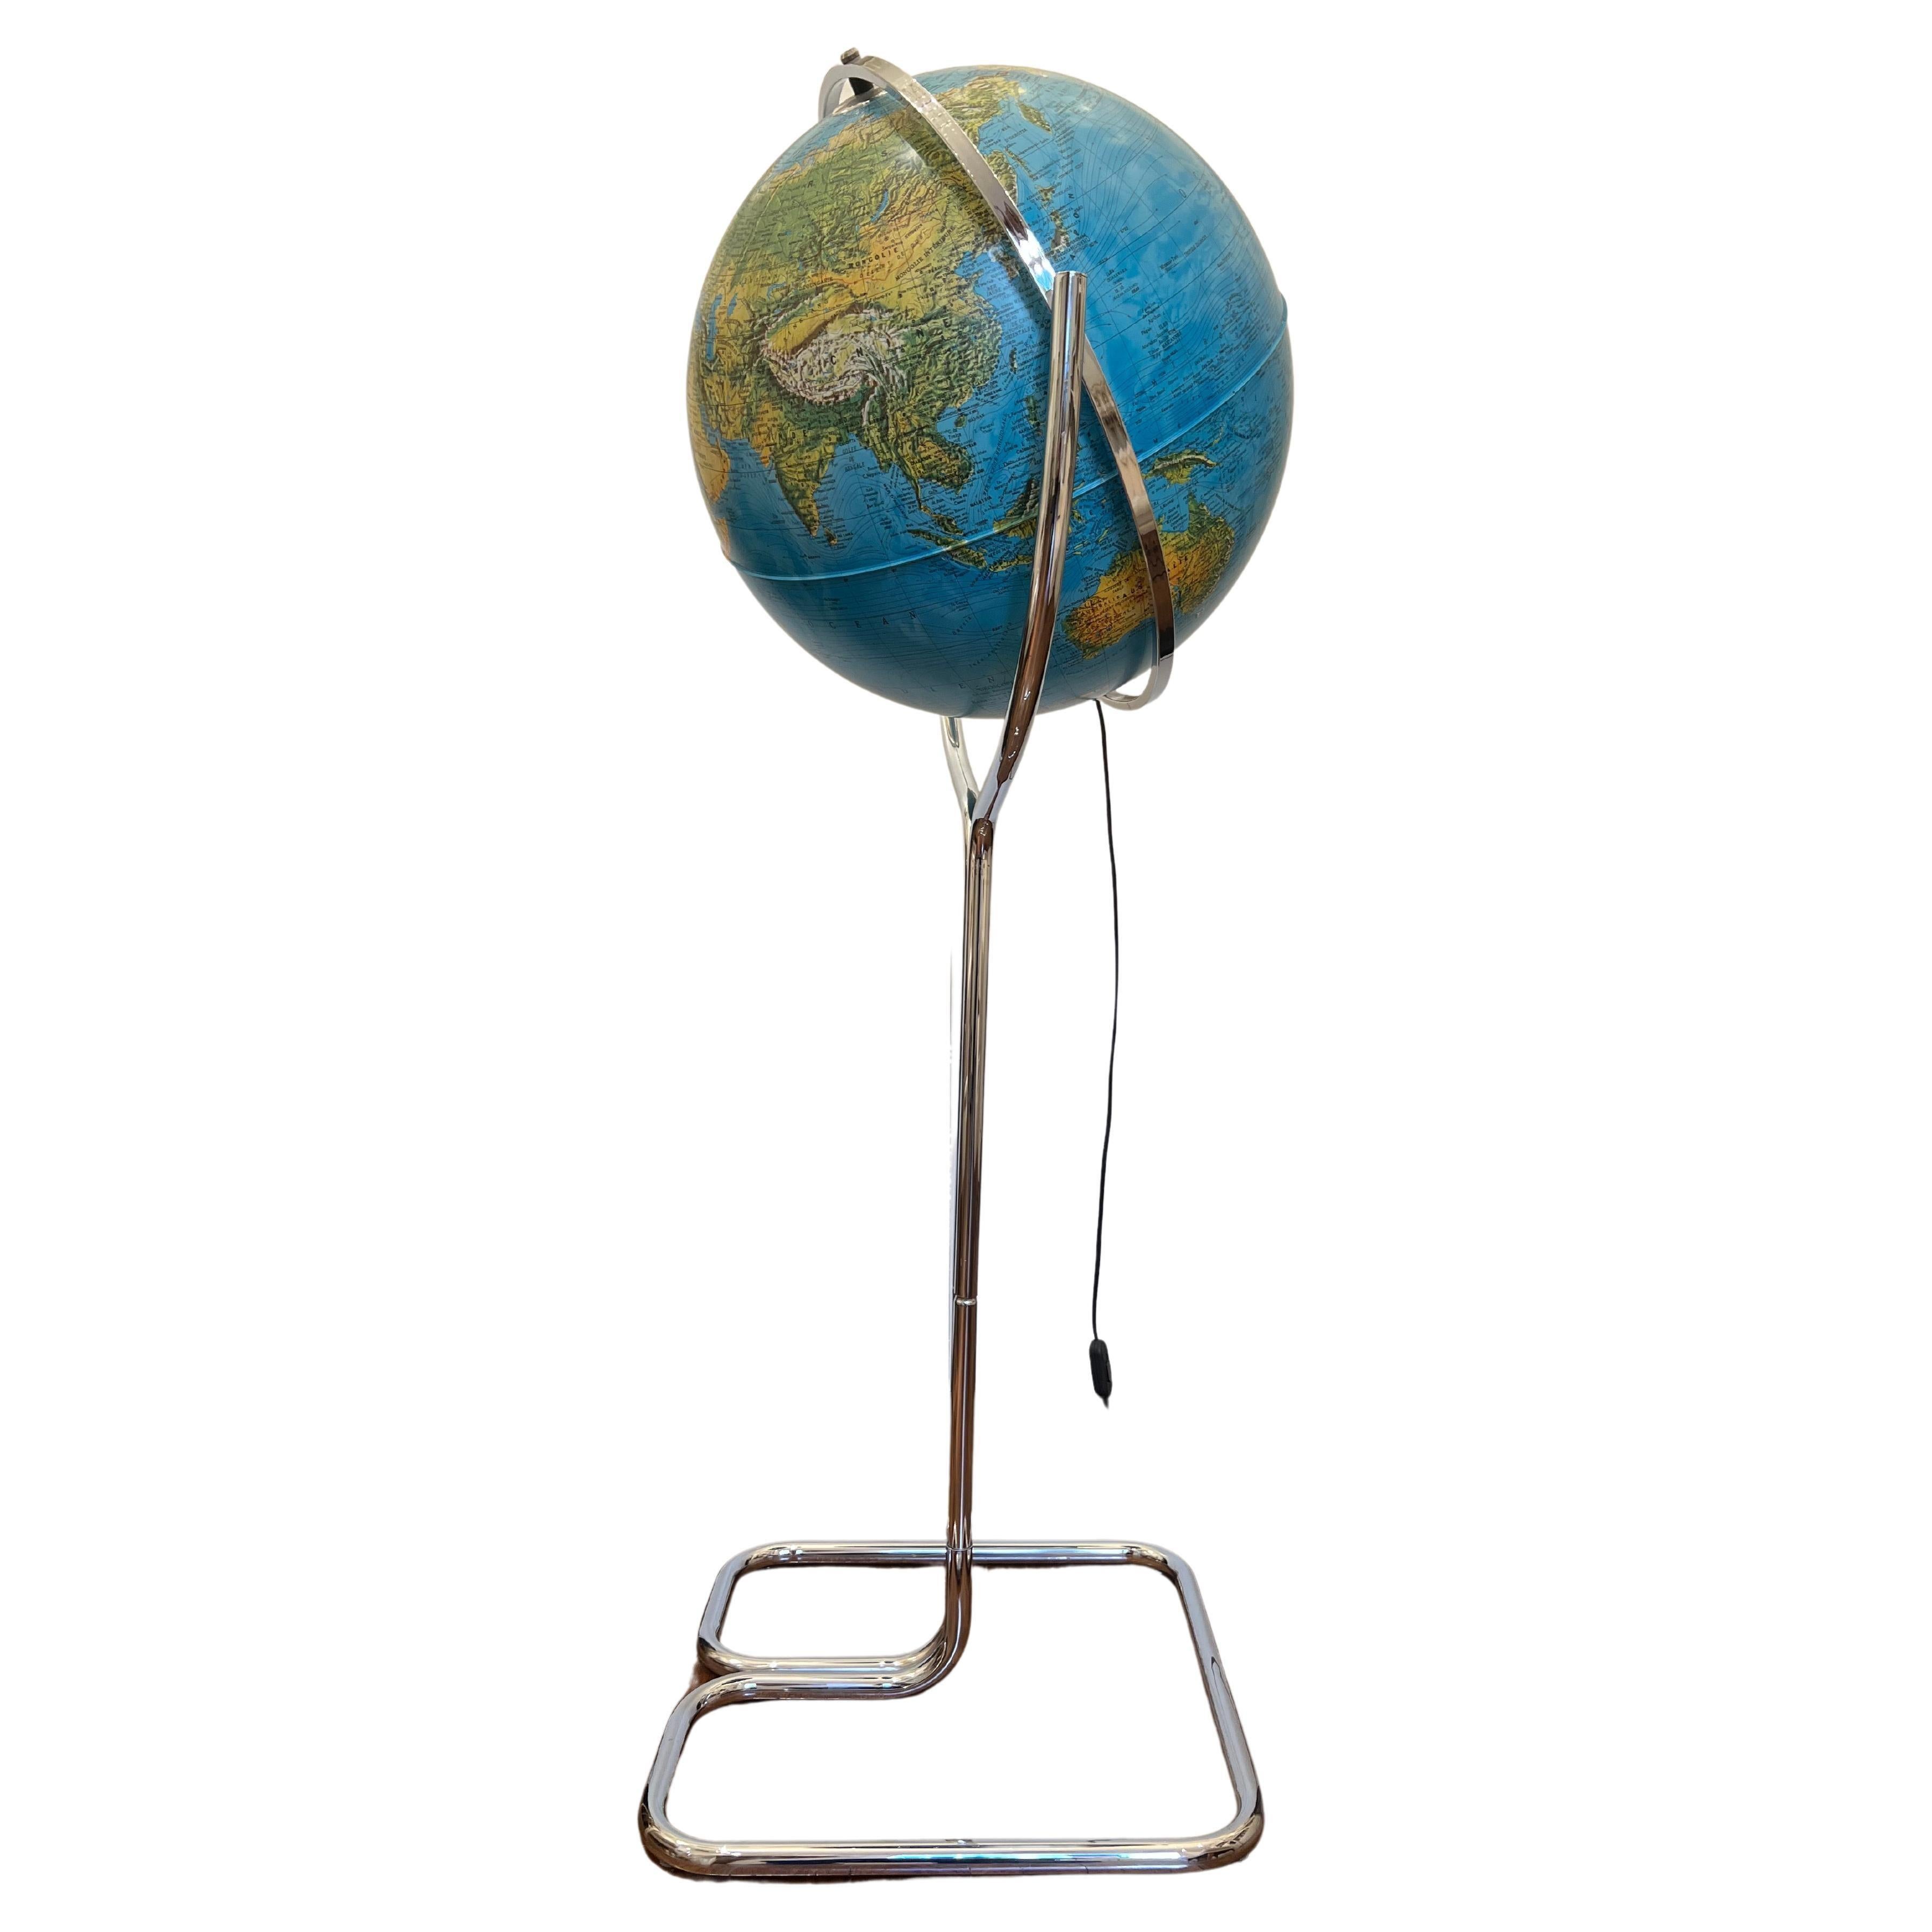 Globe lumineux insolite sur une grande base en métal chromé, fabriqué en Italie par les éditions Ricoscope à Firenze.
En parfait état, à l'exception de deux très petites pièces manquantes à la jonction des deux demi-lunettes (voir dernière